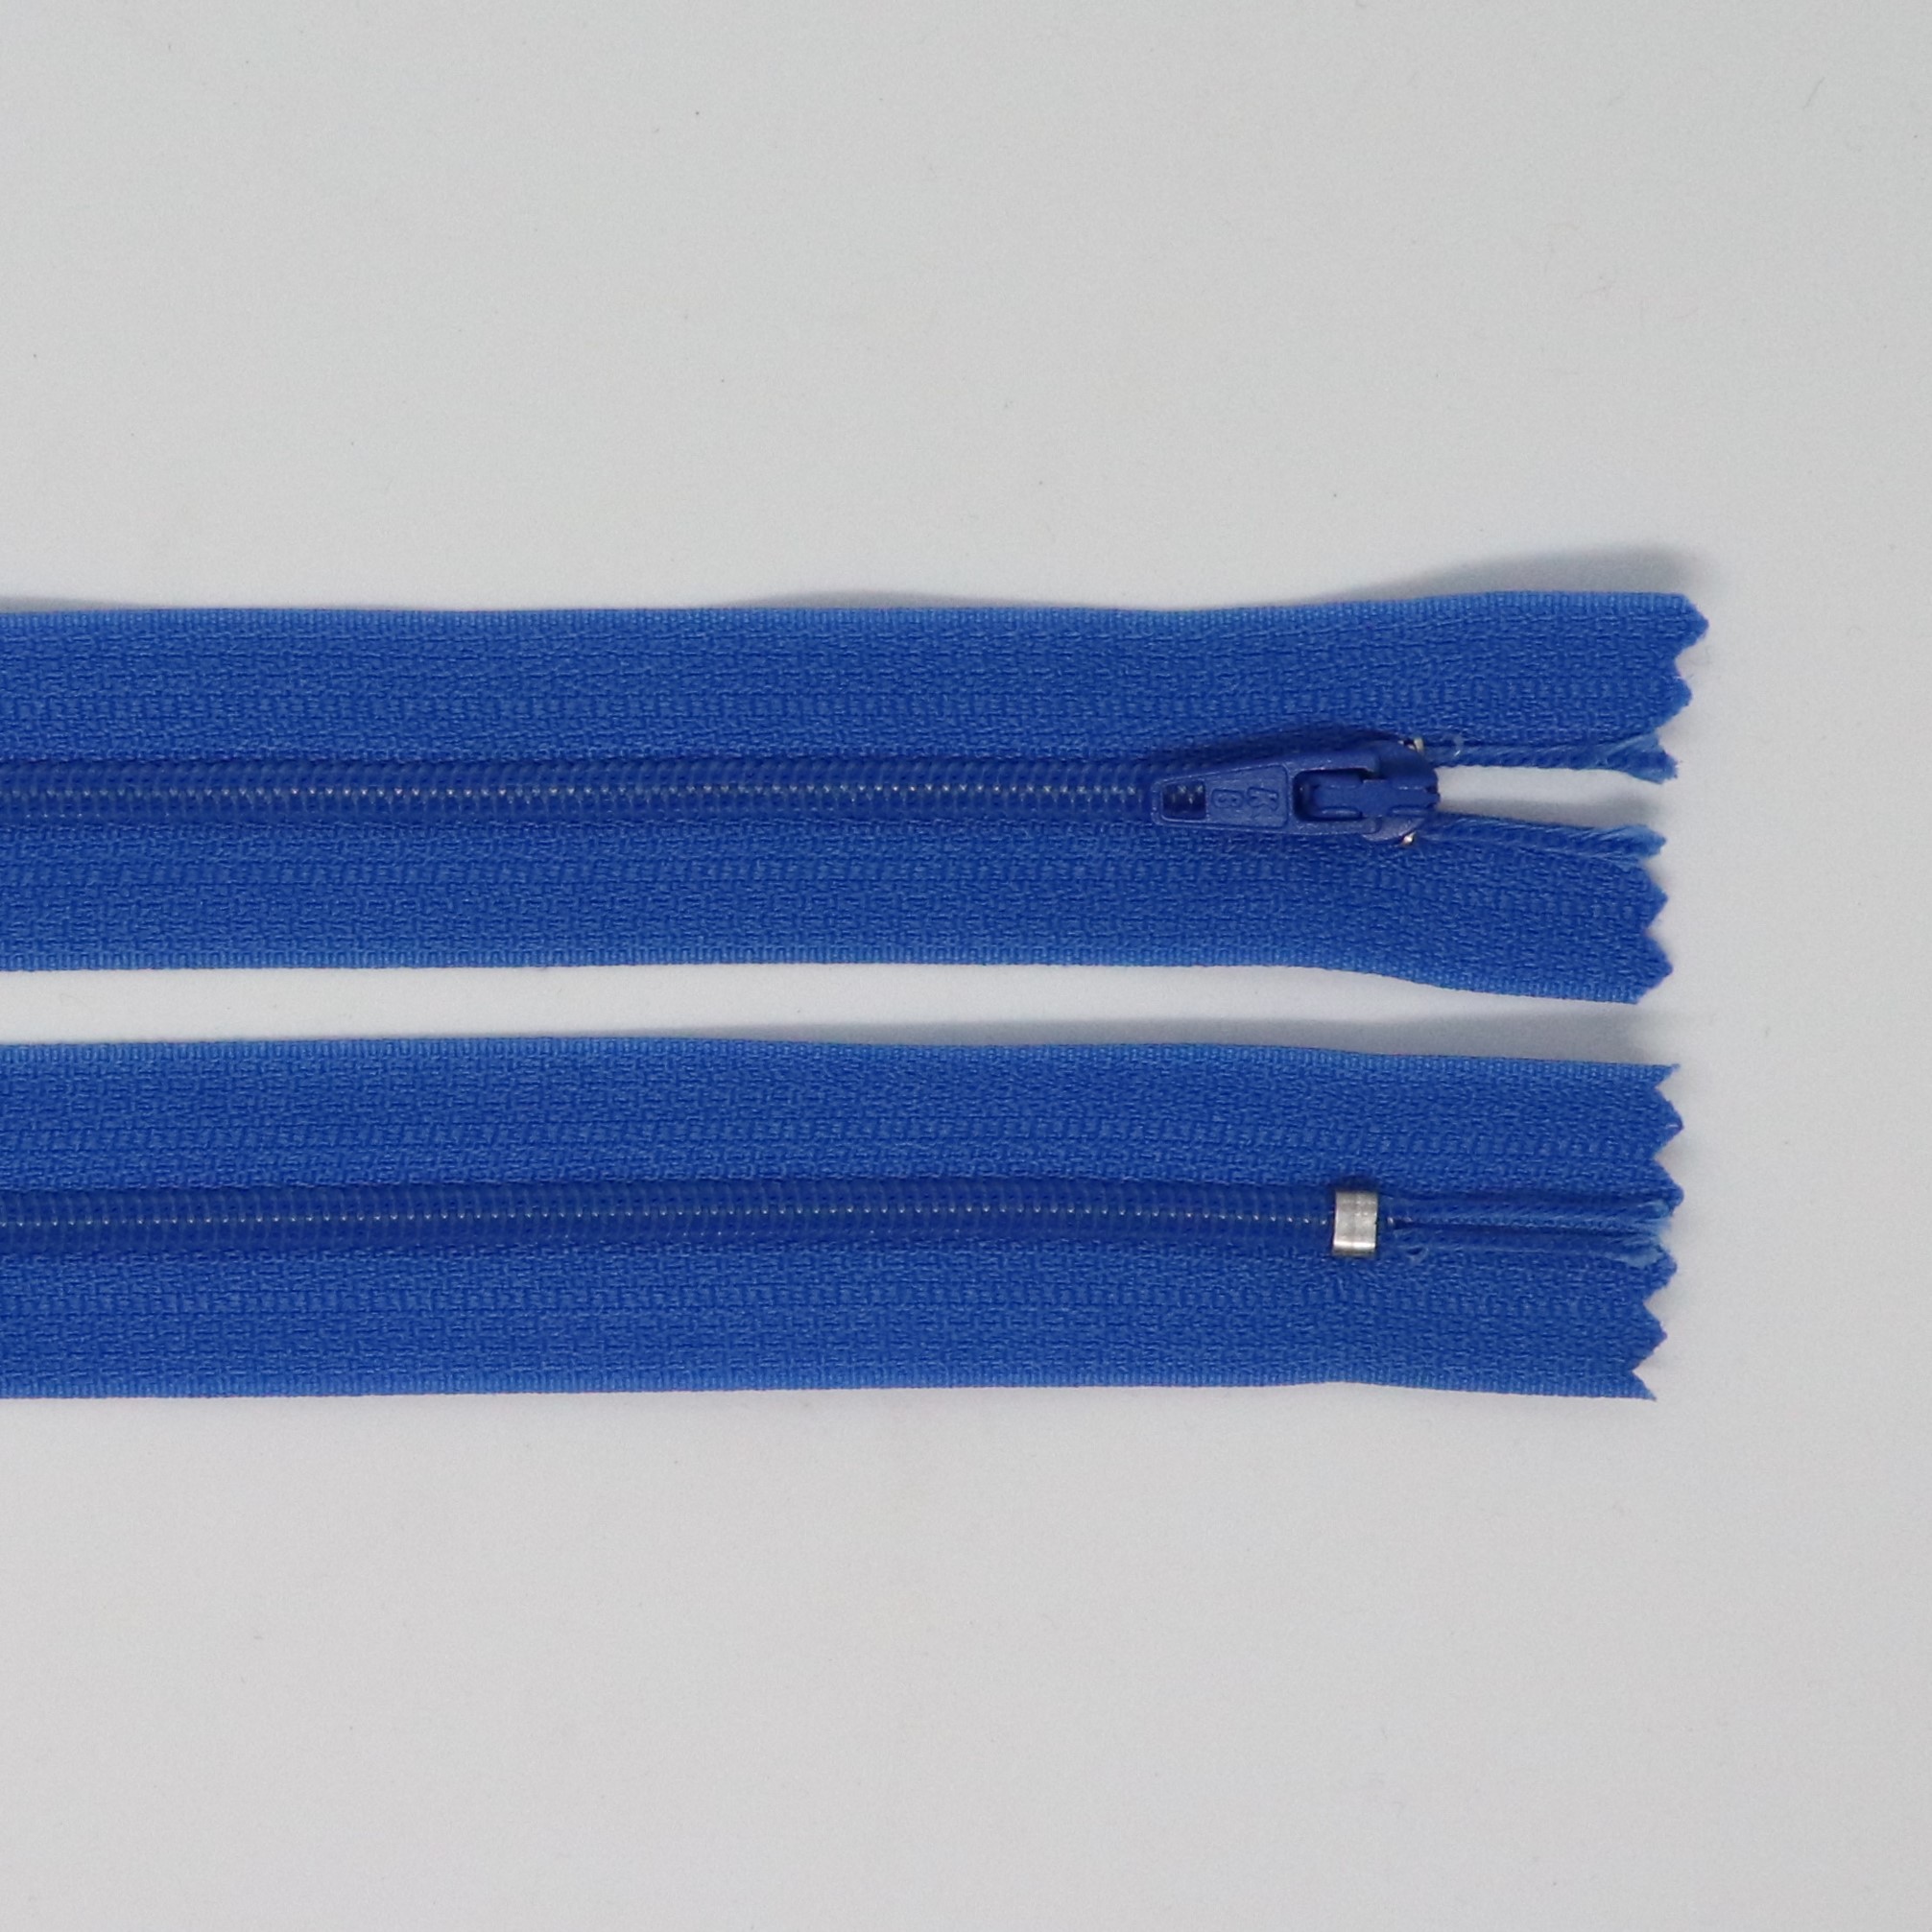 Spirálový zip, šíøe 3 mm, délka 35 cm, modrá - zvìtšit obrázek